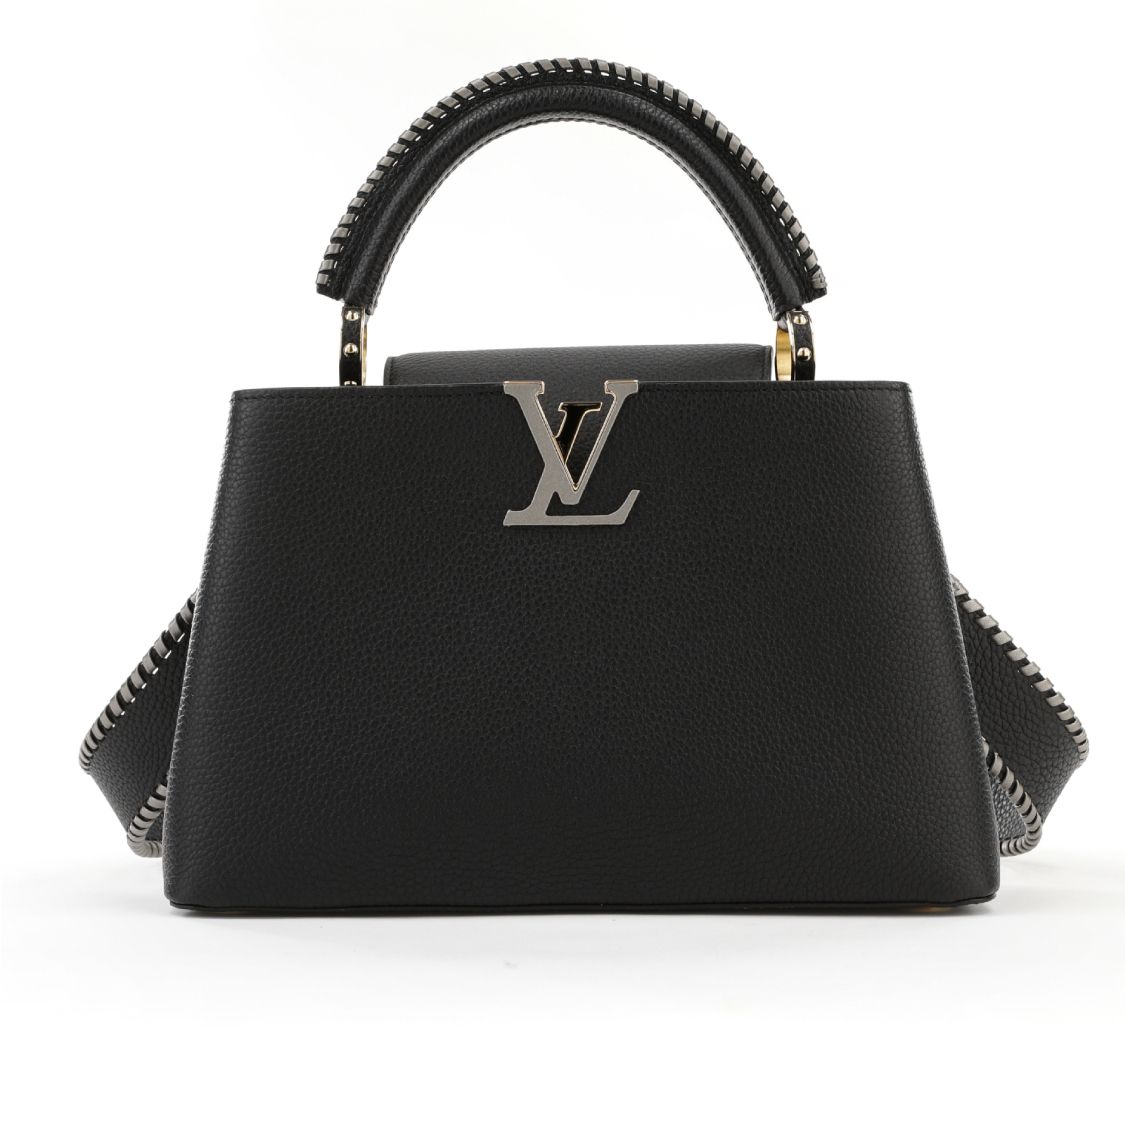 Liya Kebede and Raee in Paris for Louis Vuitton Capucines Bags